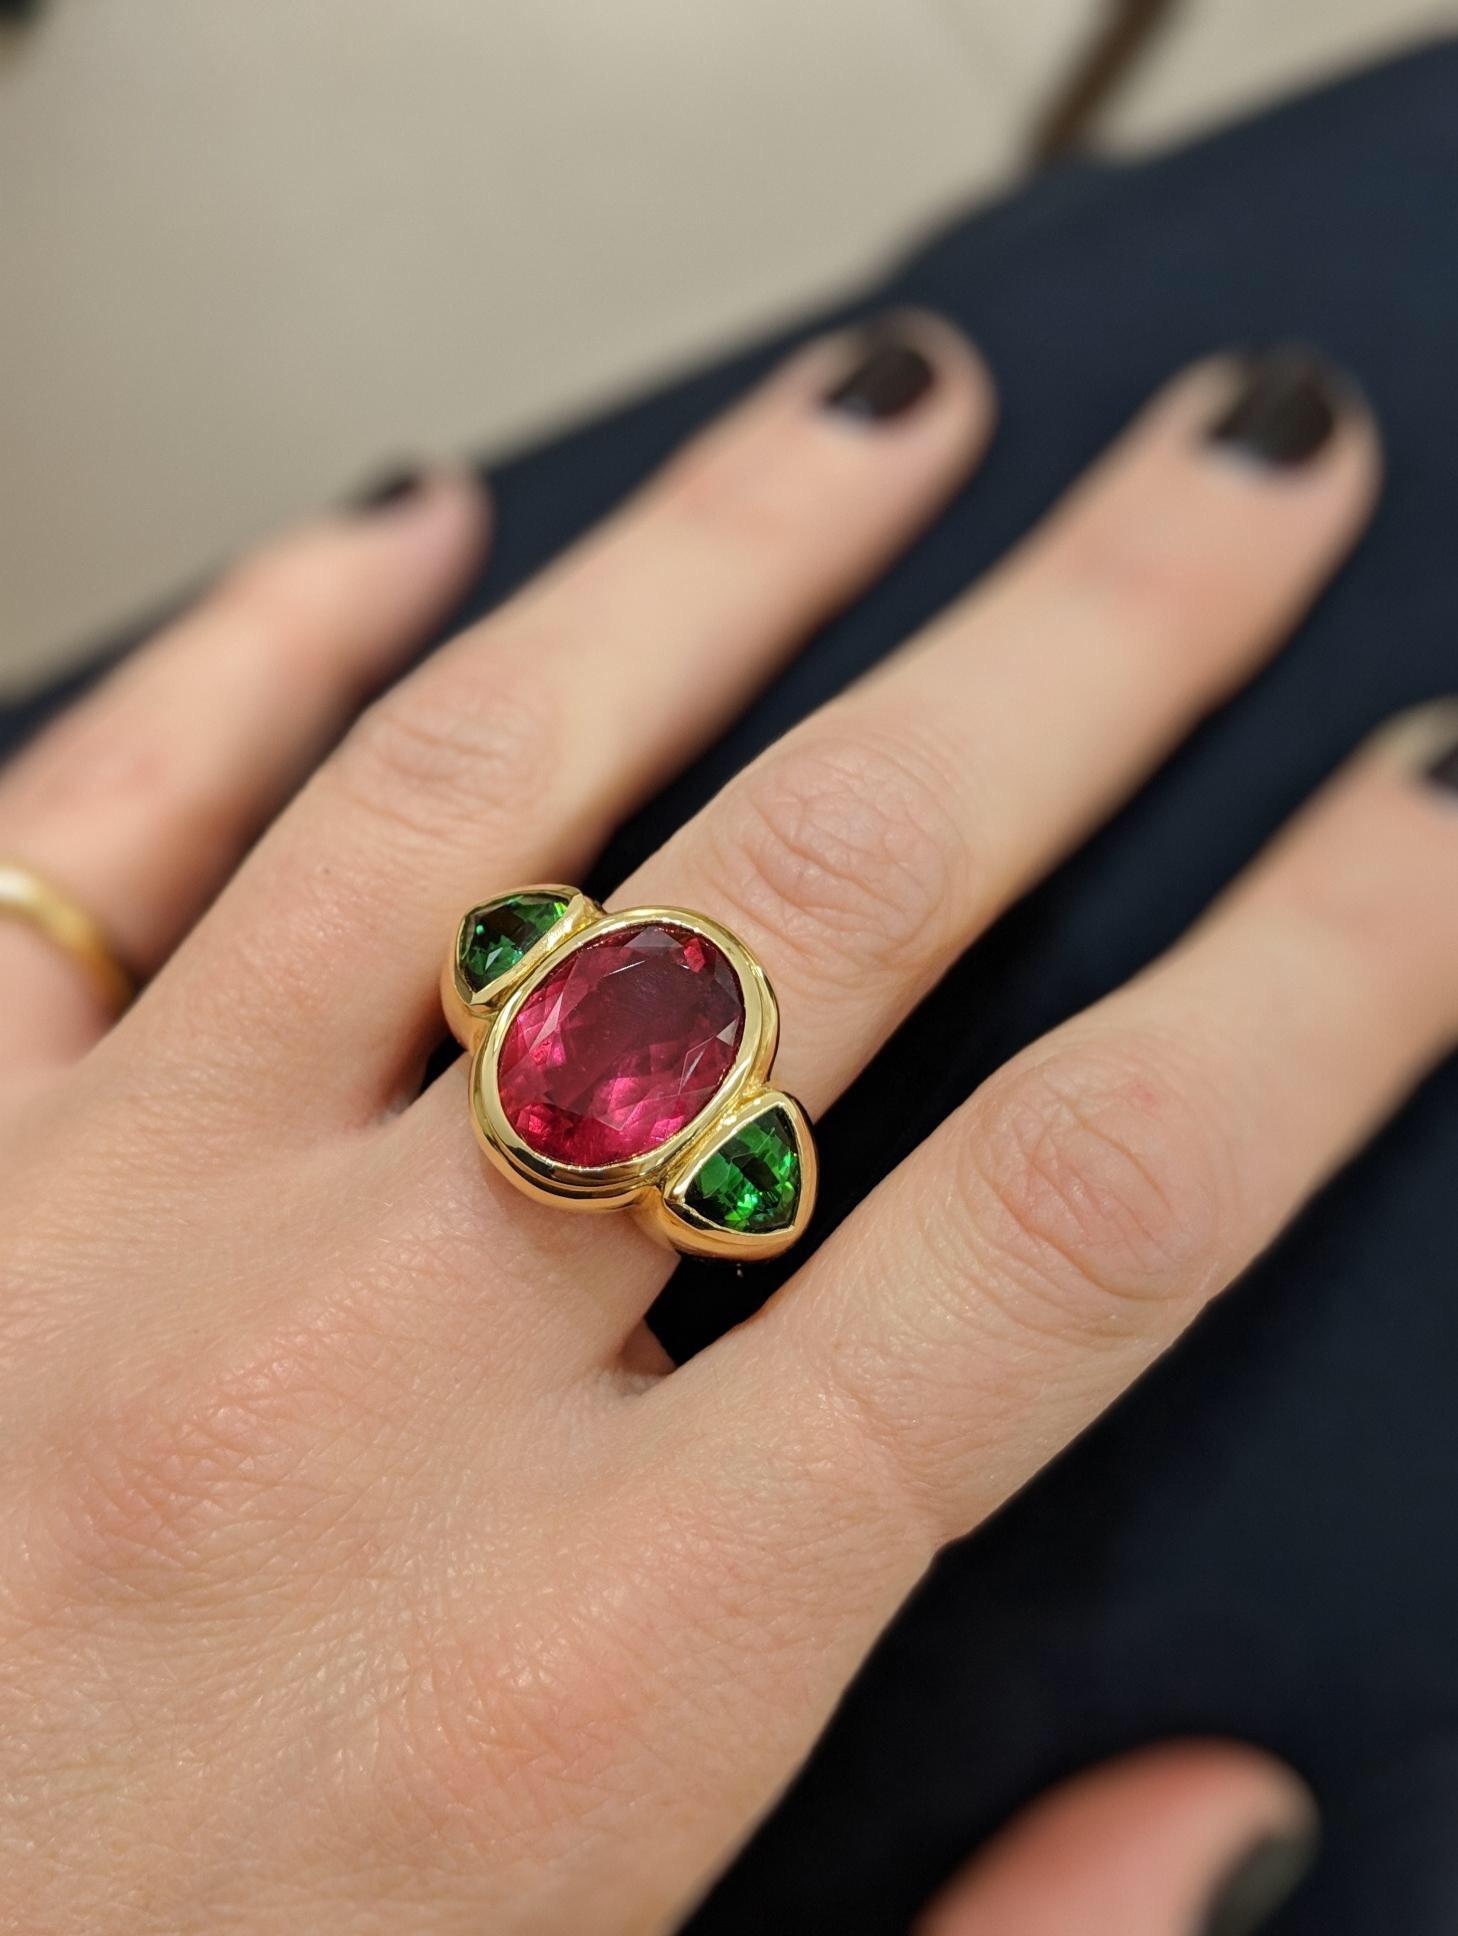 Einzigartiger, handgefertigter Ring exklusiv für Cellini Jewelers in NYC. Dieser hochglanzpolierte Ring aus 18-karätigem Gelbgold enthält einen wunderschönen ovalen Rubellit mit einem Gewicht von  7,27 Karat in der Mitte, flankiert von einem Paar